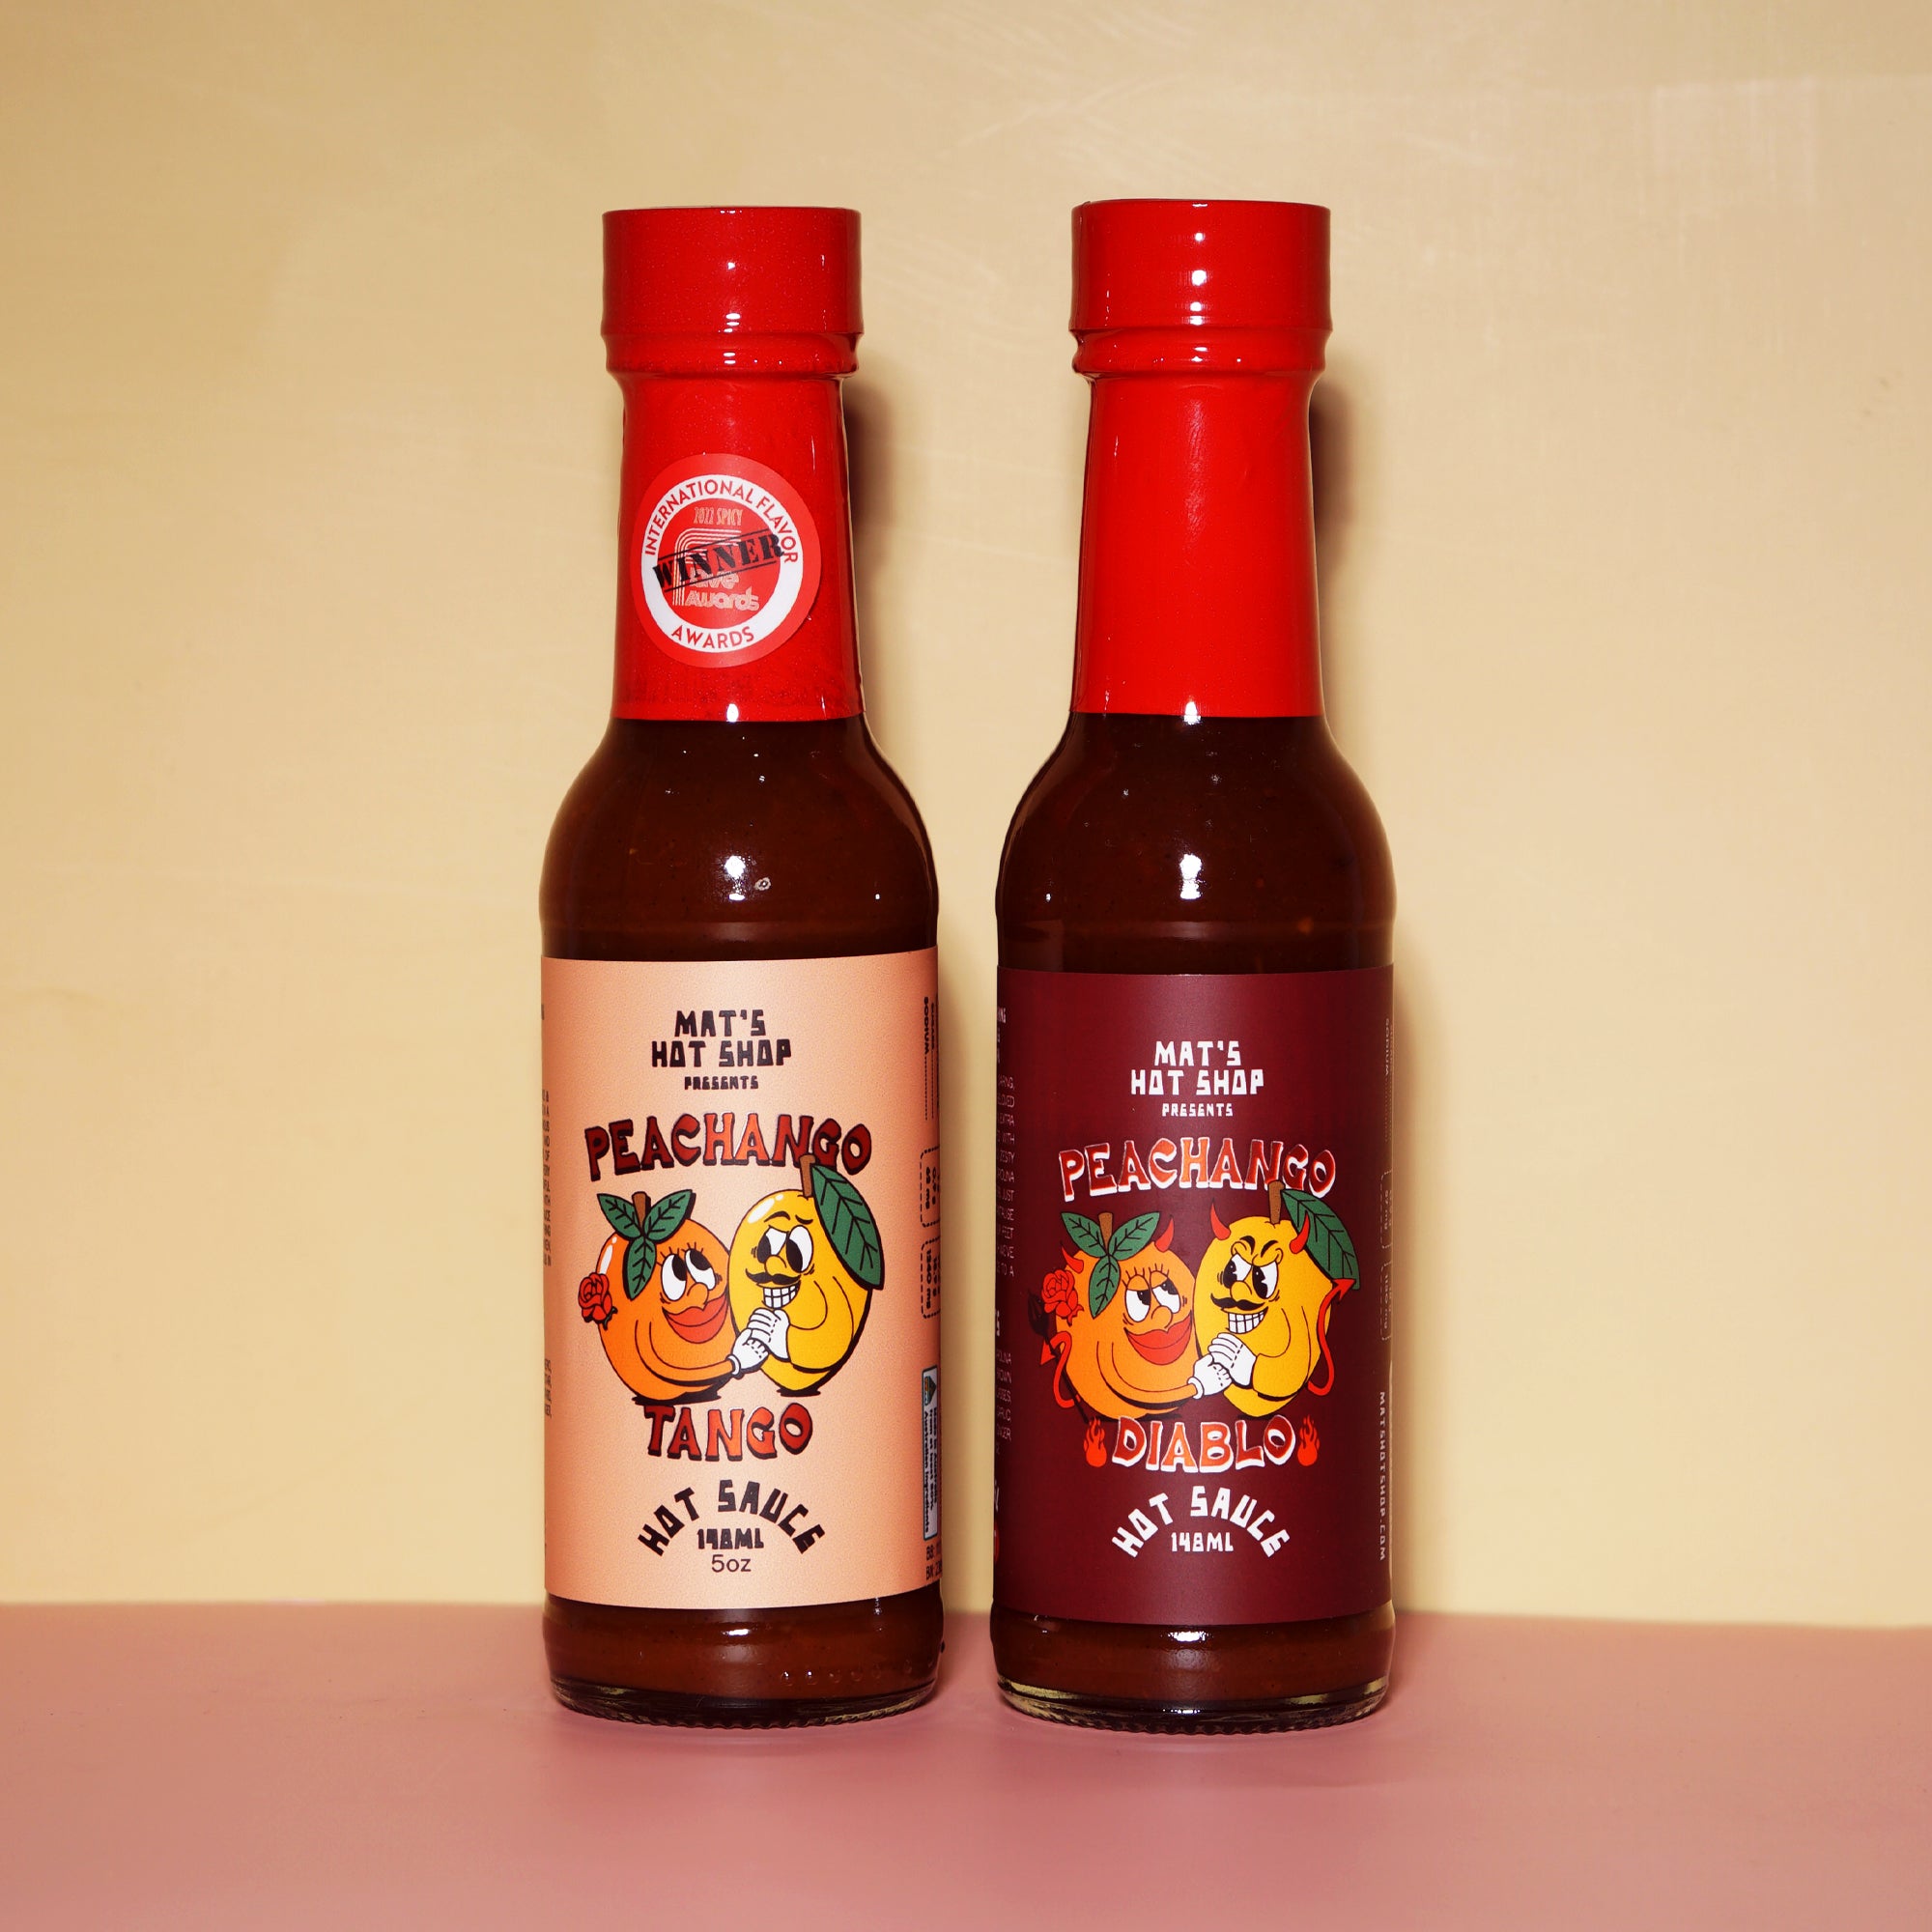 Mat's Hot Shop - Mat's Hot Shop - Peachango Hot Sauce Duo Gift Pack - Mat's Hot Shop - Australia's Hot Sauce Store